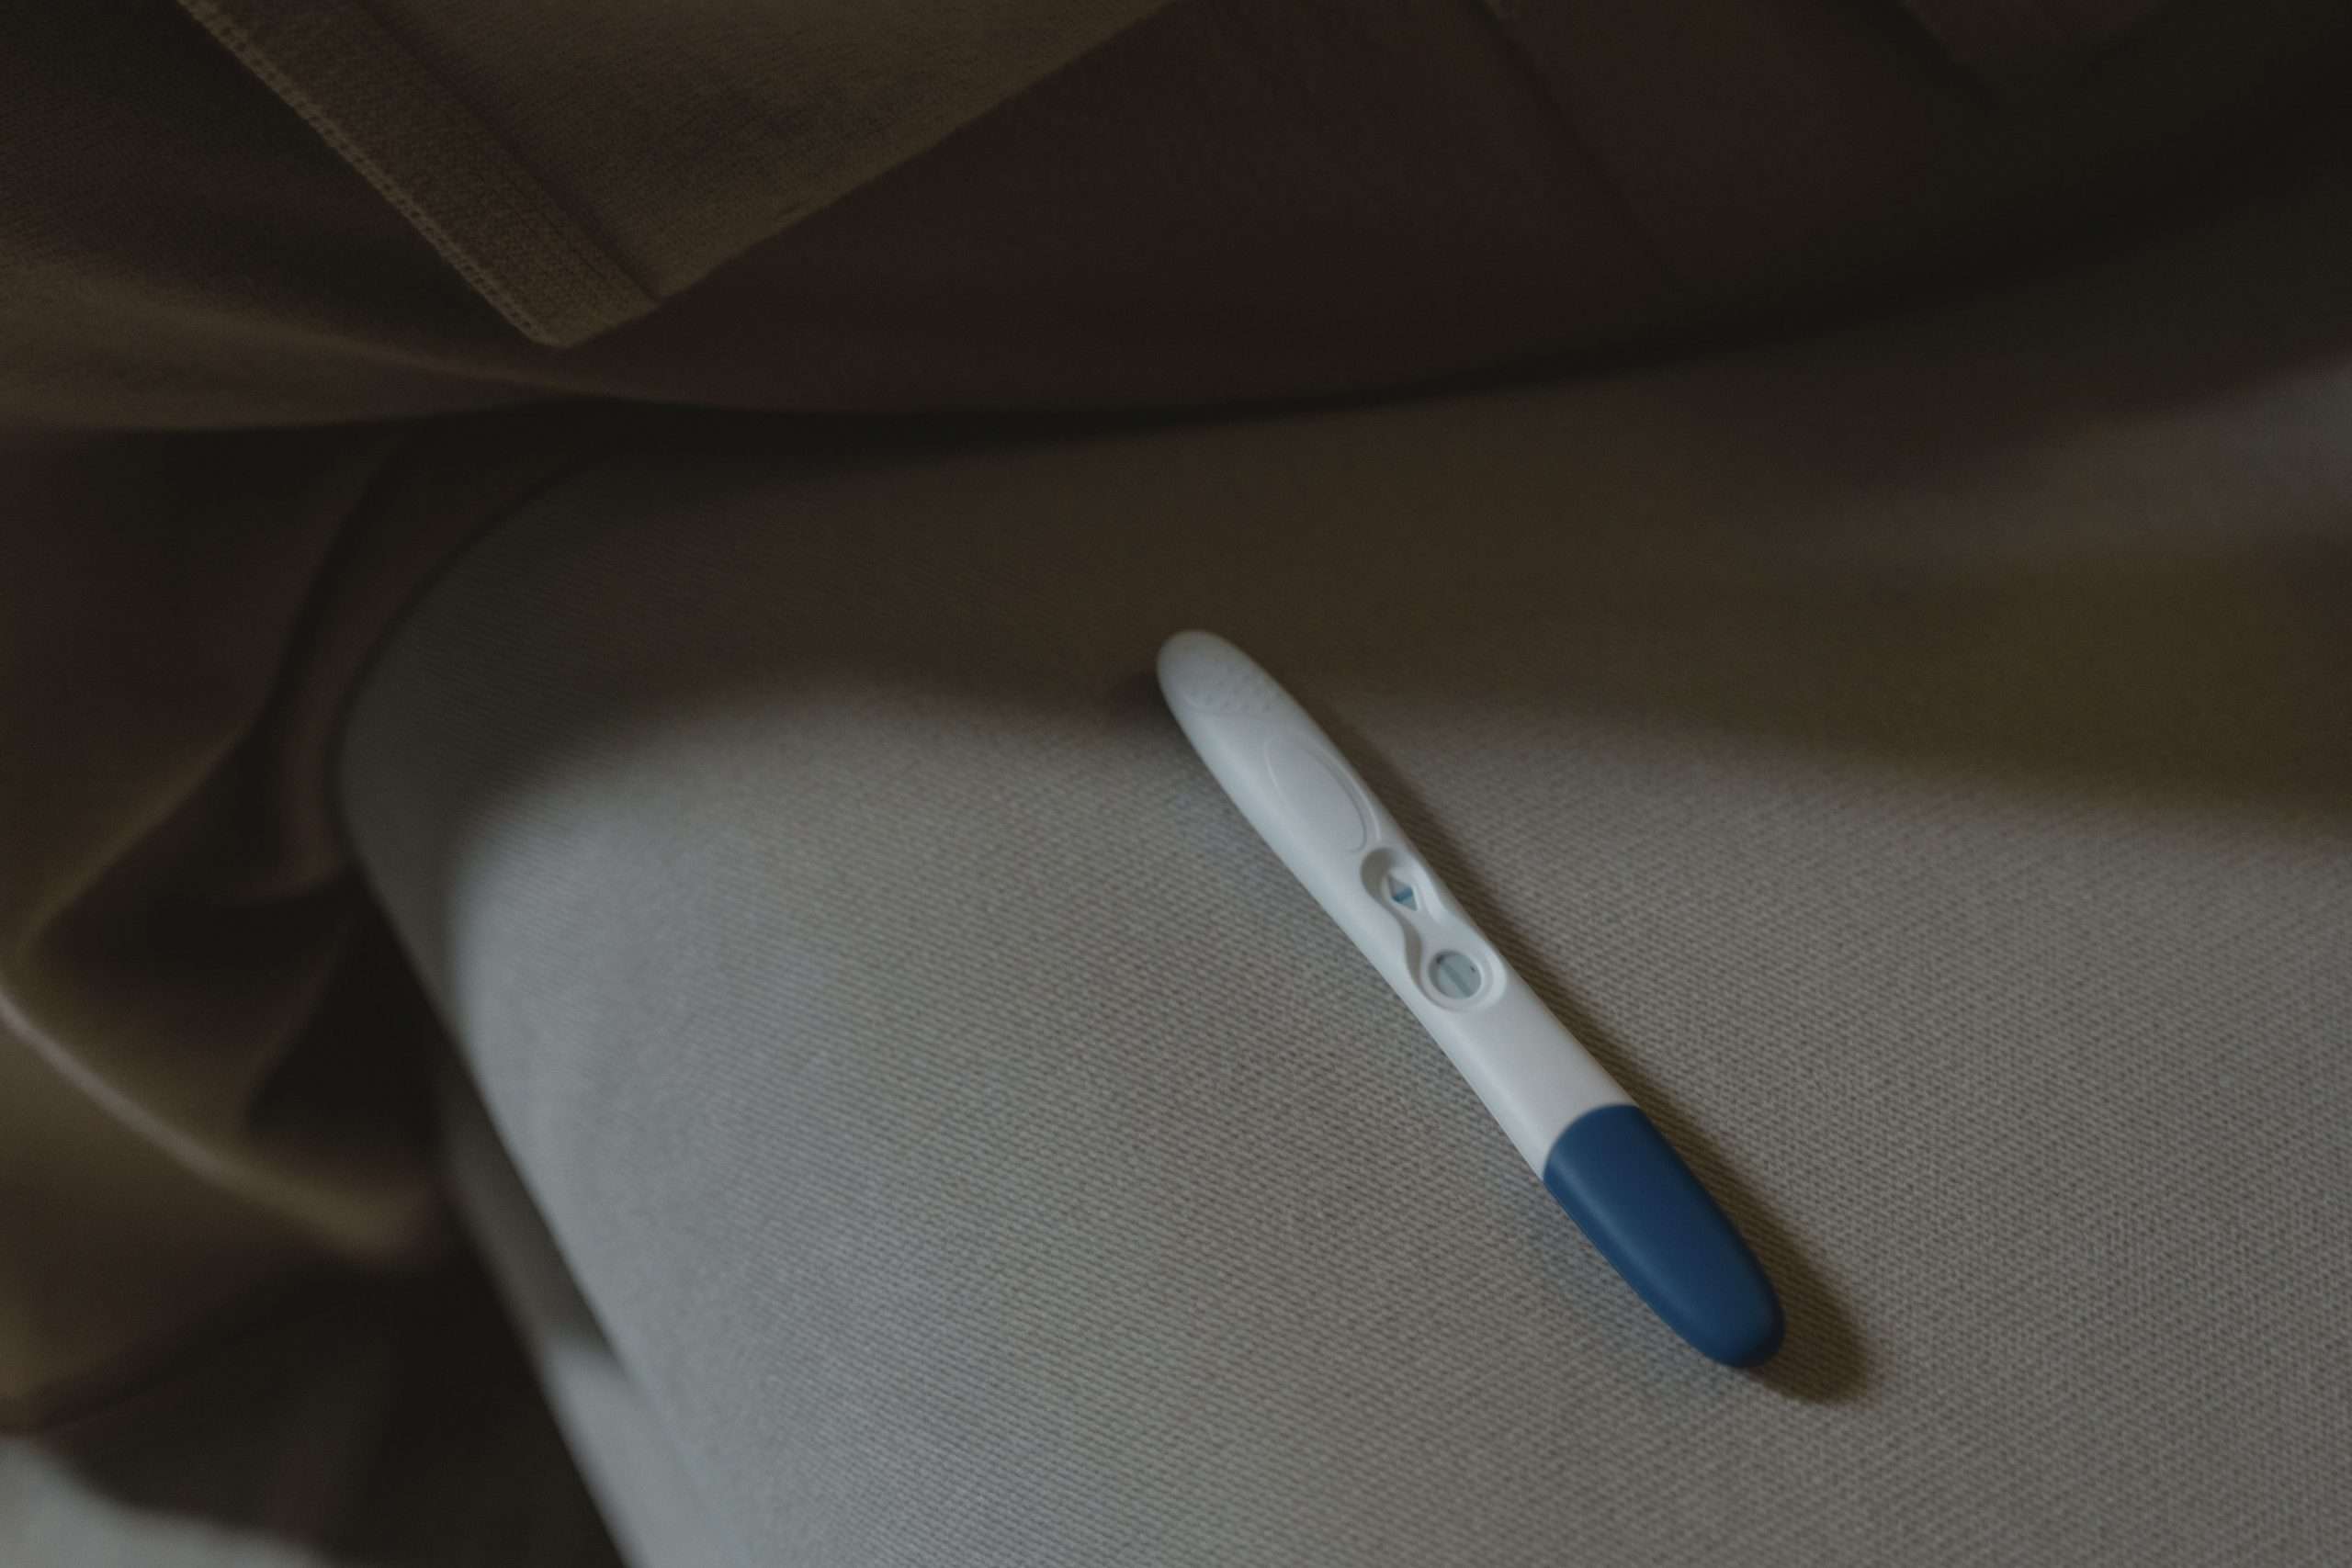 Alerta sobre la venta de test de embarazo ilegales en internet